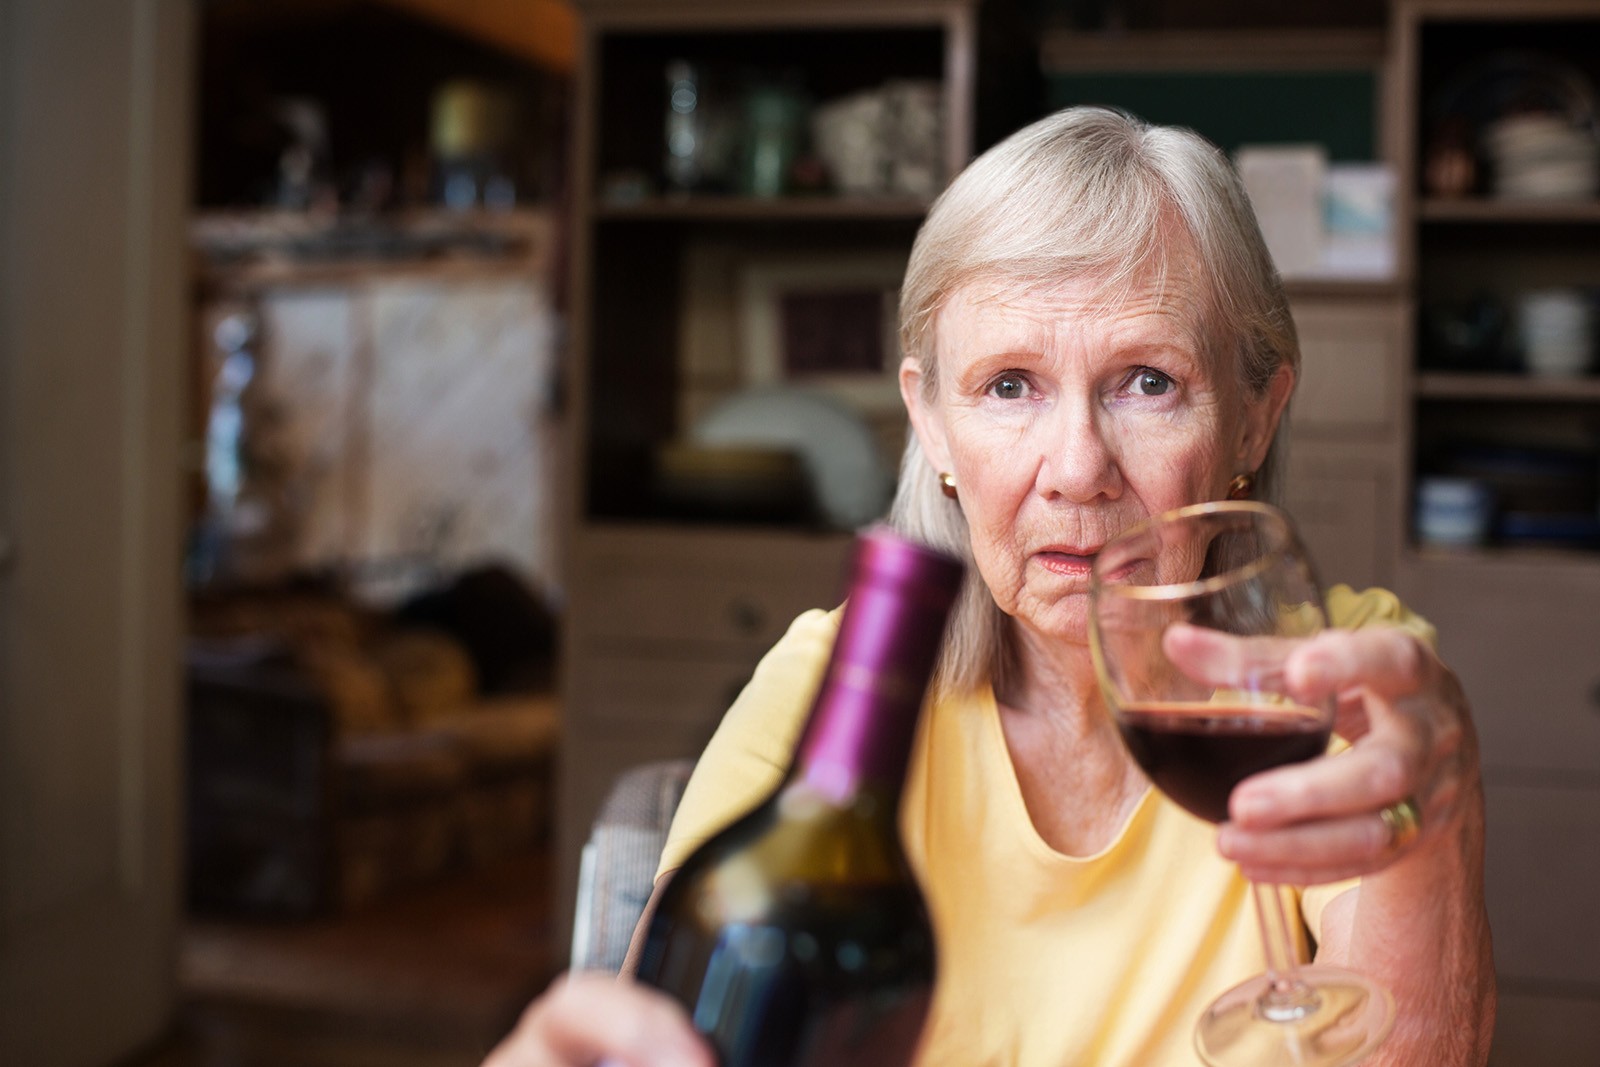 Ingestão de bebida alcoólica associada à demência em idosos